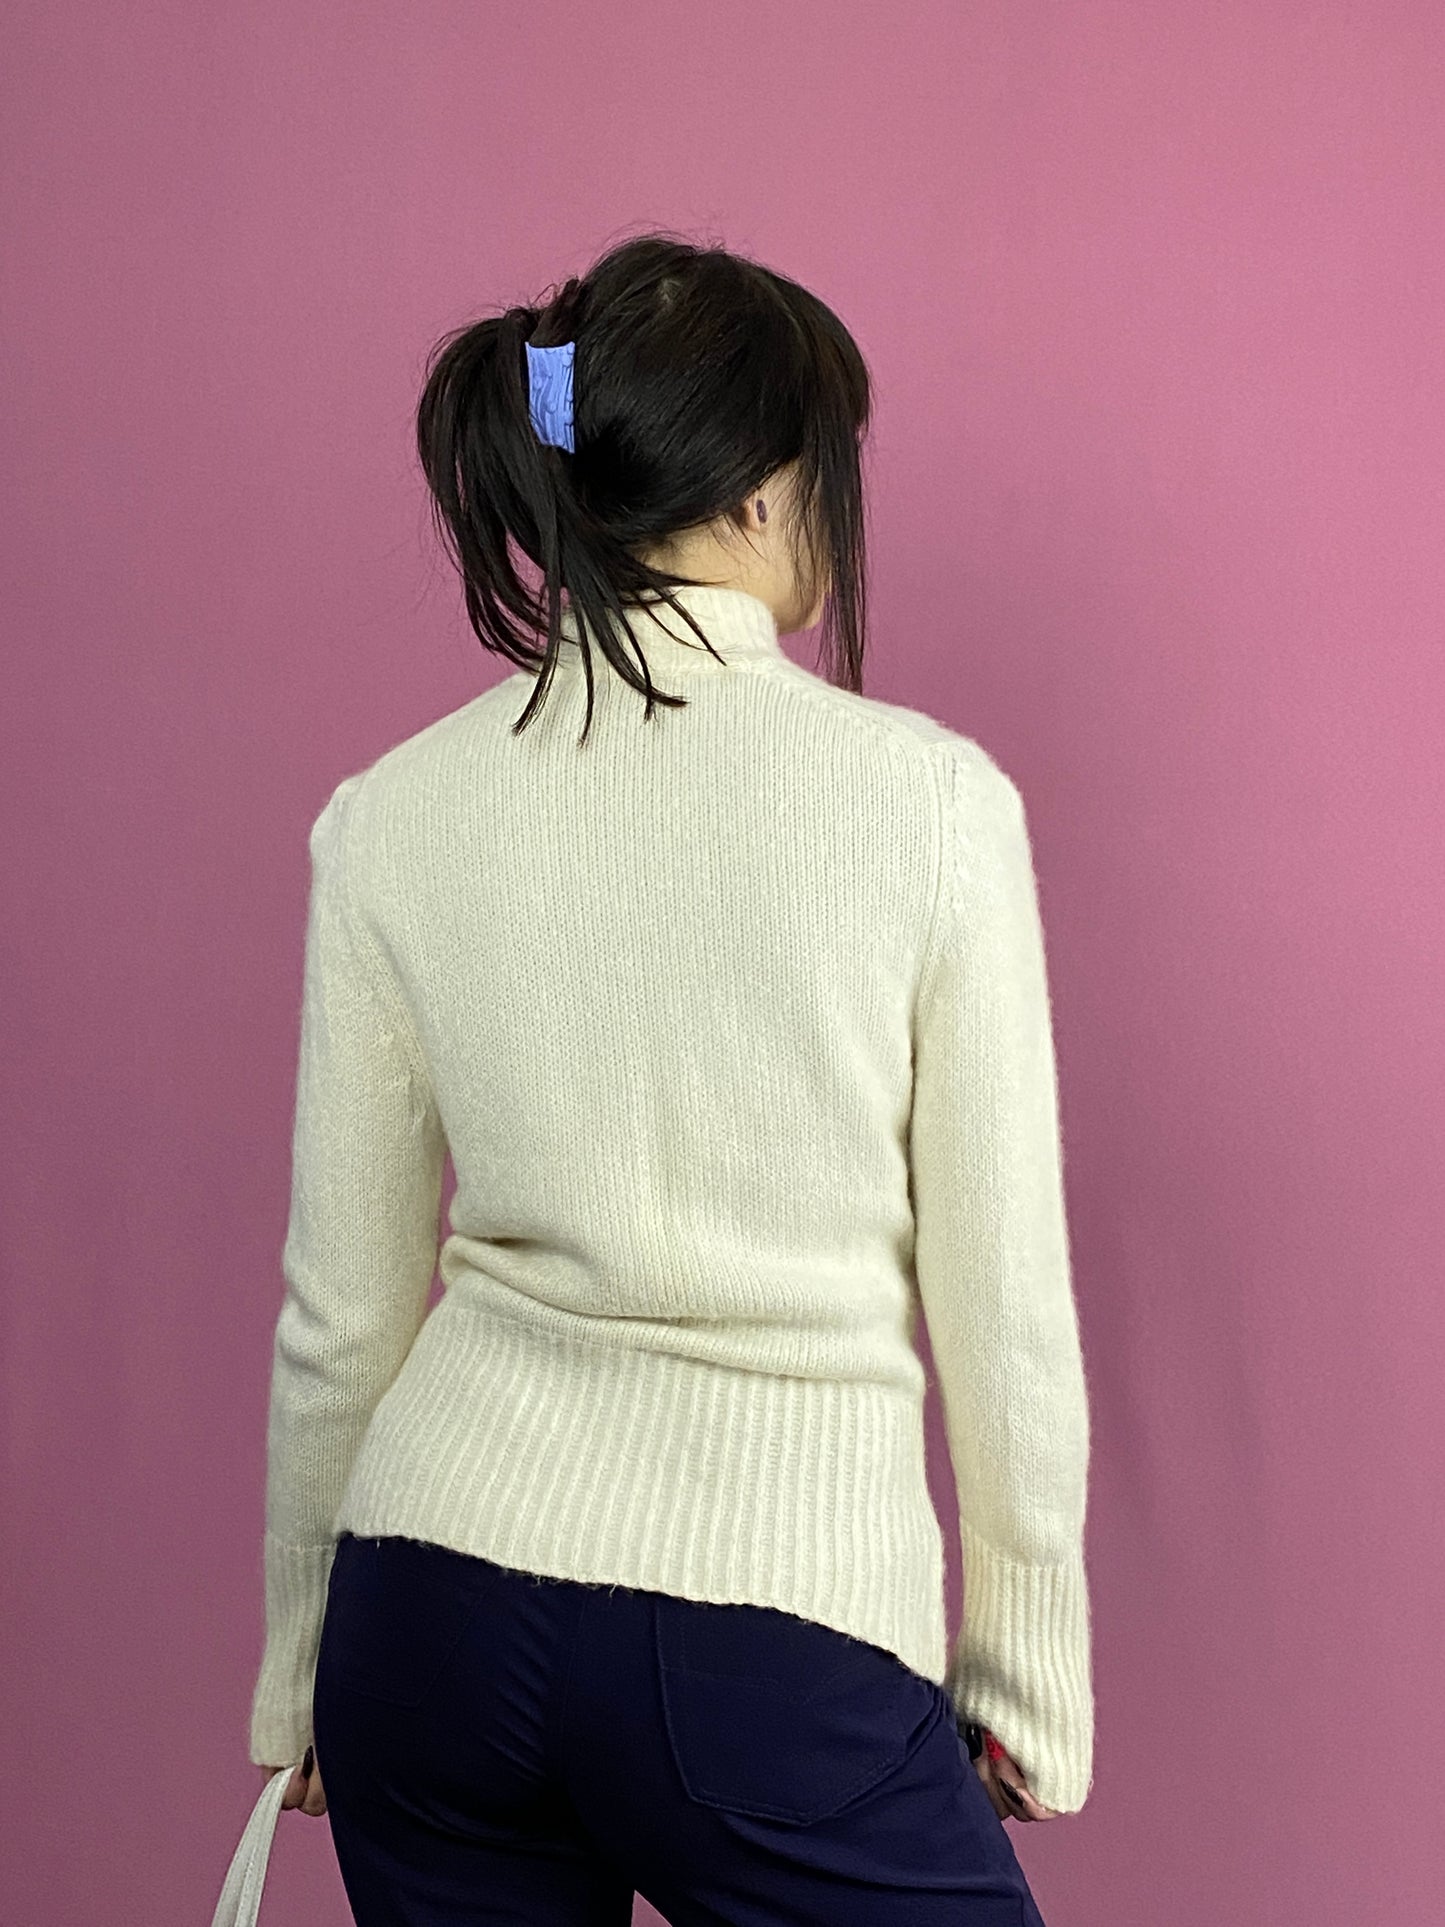 Iris Von Arnim Vintage Women's Full Zip Sweater - Medium White Cashmere